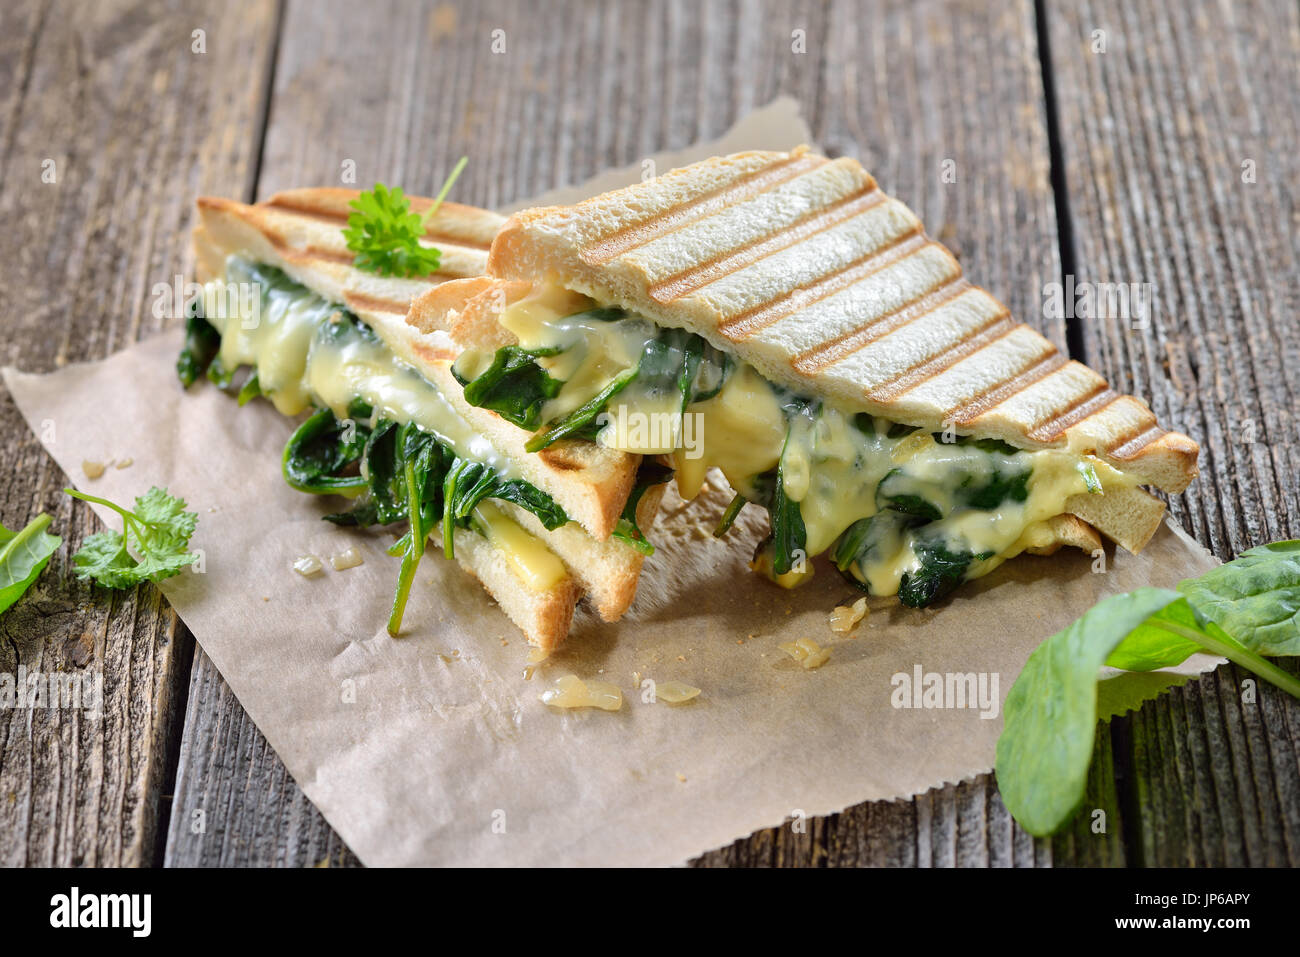 Double appui sur végétarien panini avec de jeunes feuilles d'Épinards, oignons et fromage servi sur du papier sandwich sur une table en bois Banque D'Images